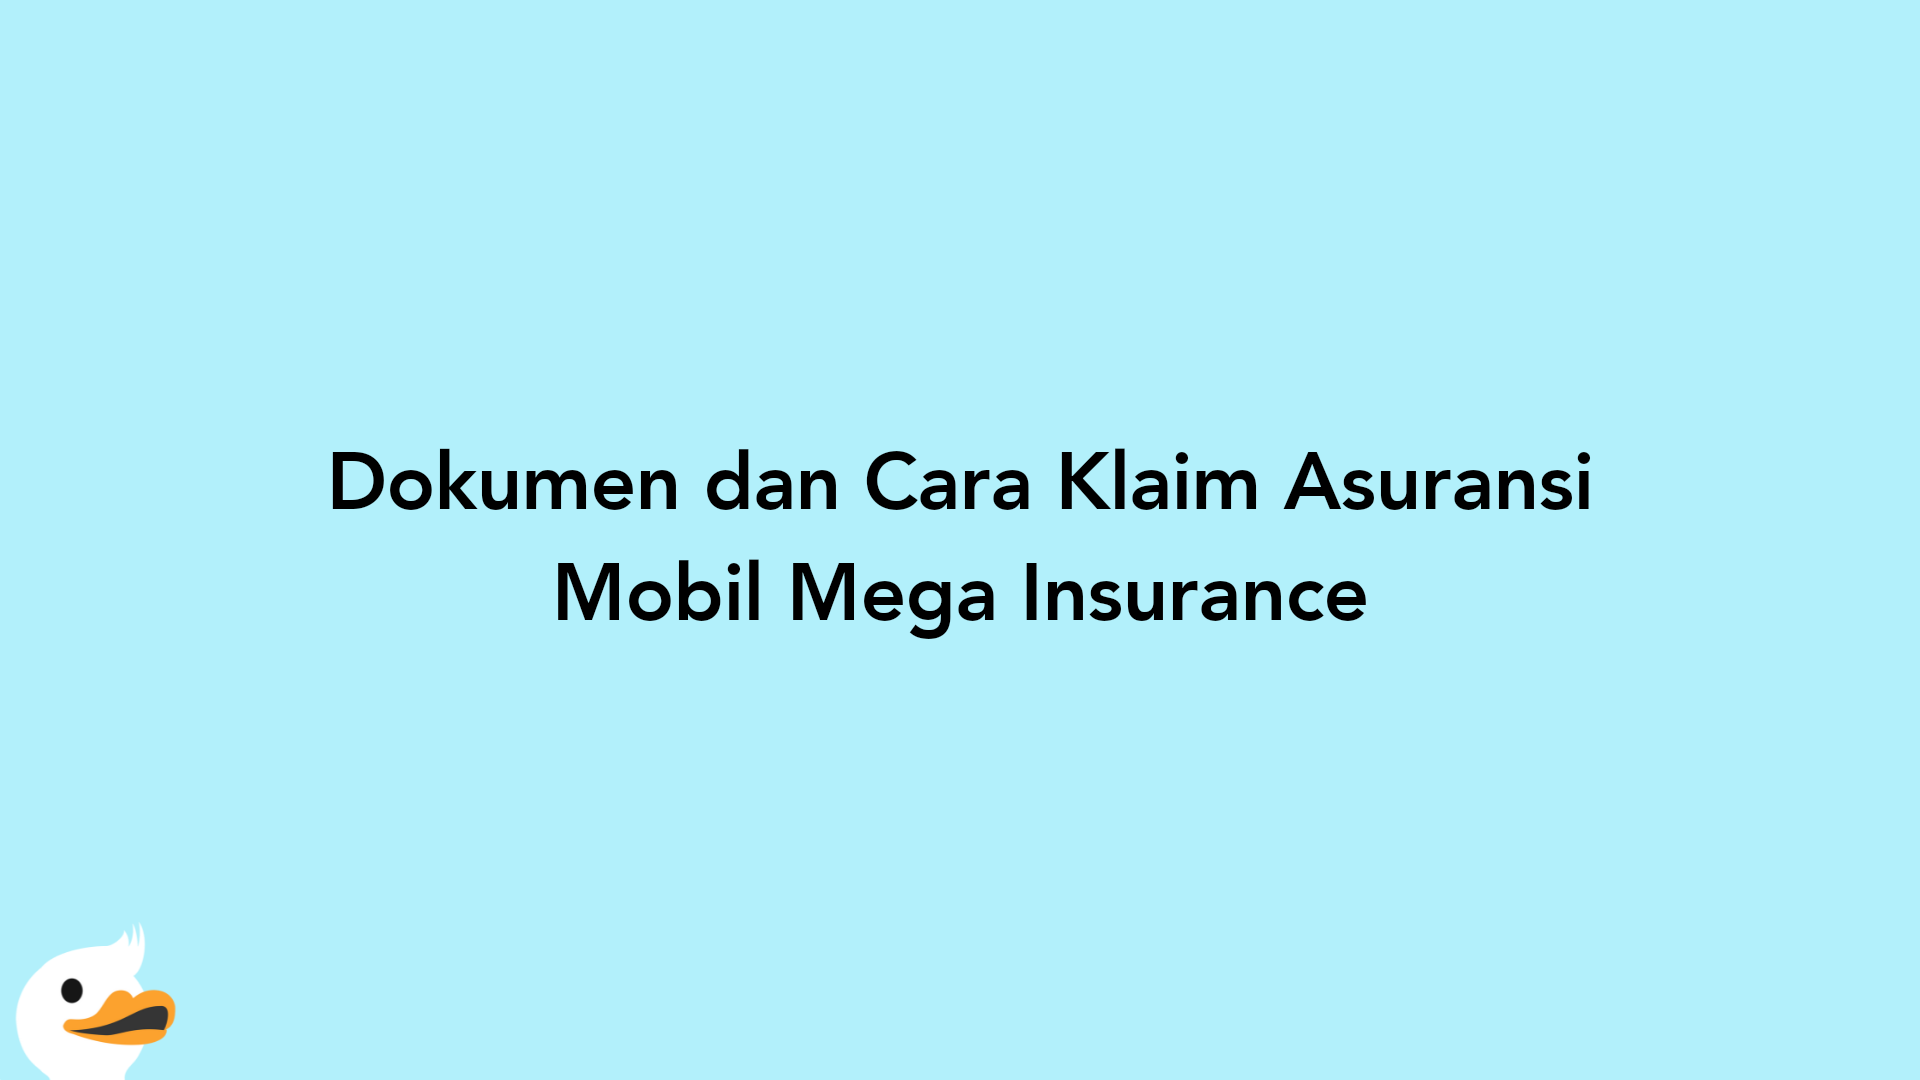 Dokumen dan Cara Klaim Asuransi Mobil Mega Insurance